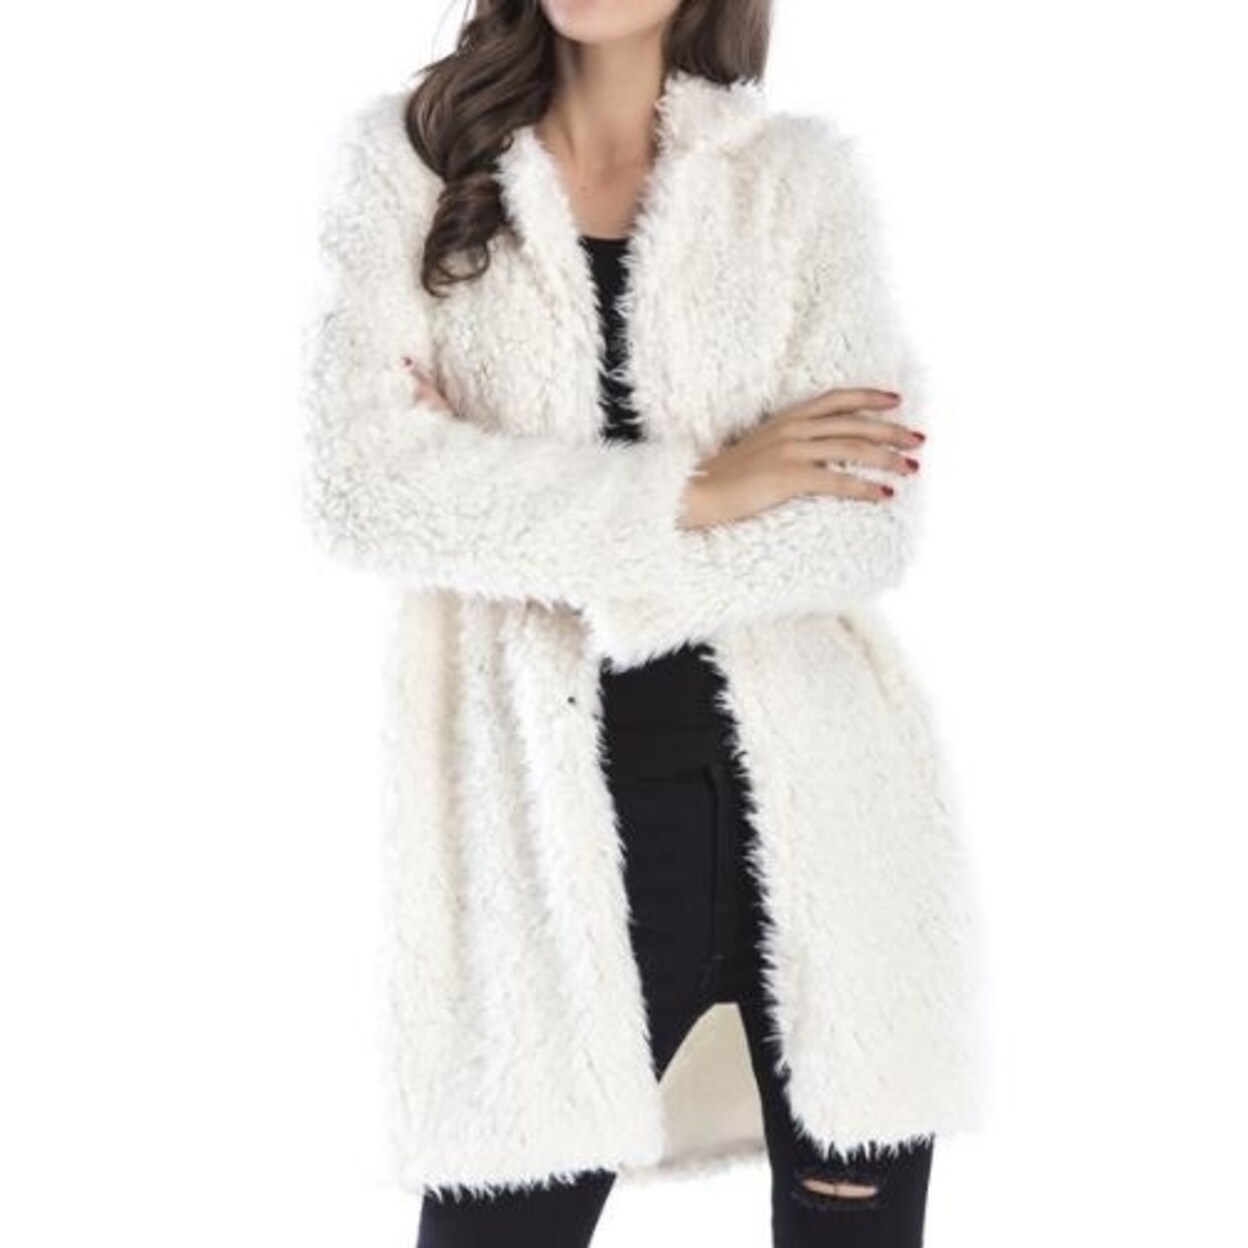 Hotmiss Women/'s Long Sleeve Lapel Open Front Polar Fleece Shaggy Cardigans Jacket Coats